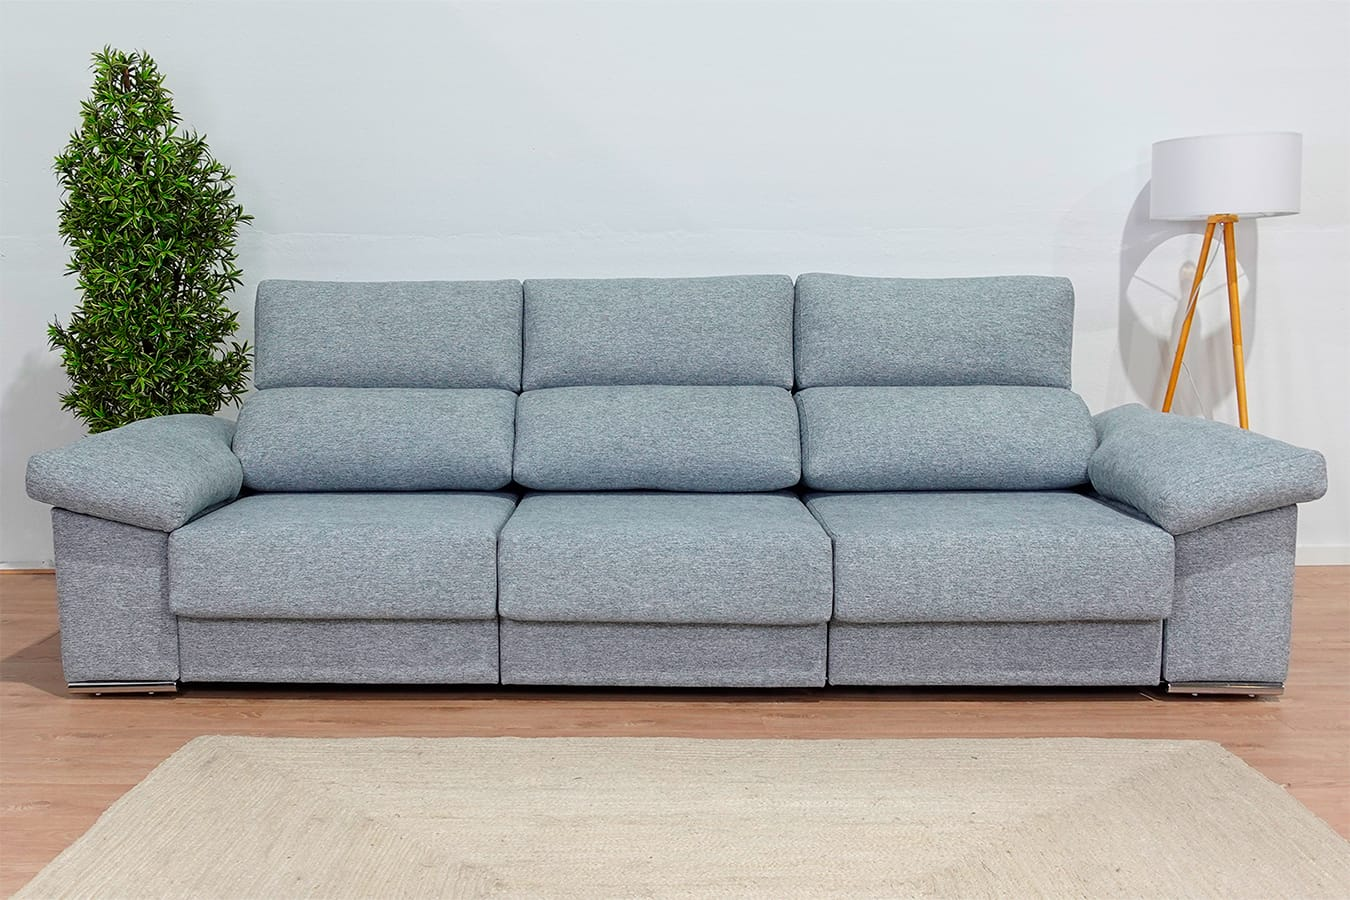 Sofa barato moderno